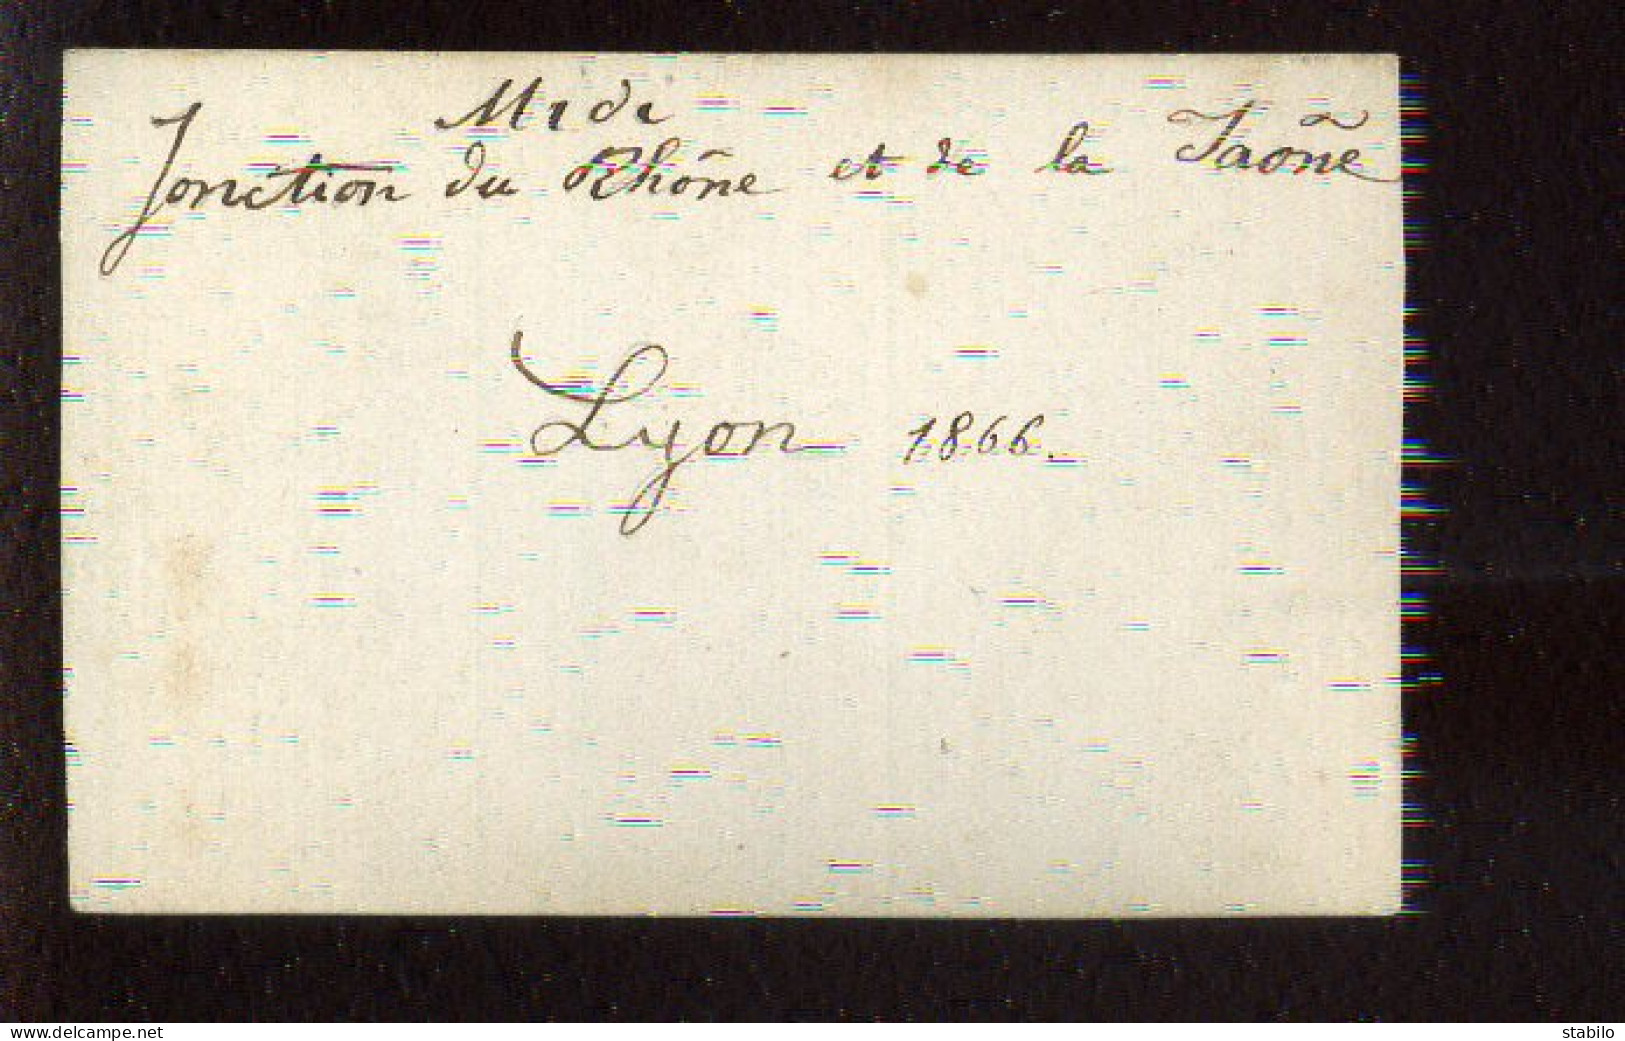 LYON (RHONE) - JONCTION DU RHONE ET DE LA SAONE 1866 - FORMAT 9.5 X 6.3 CM - Lugares